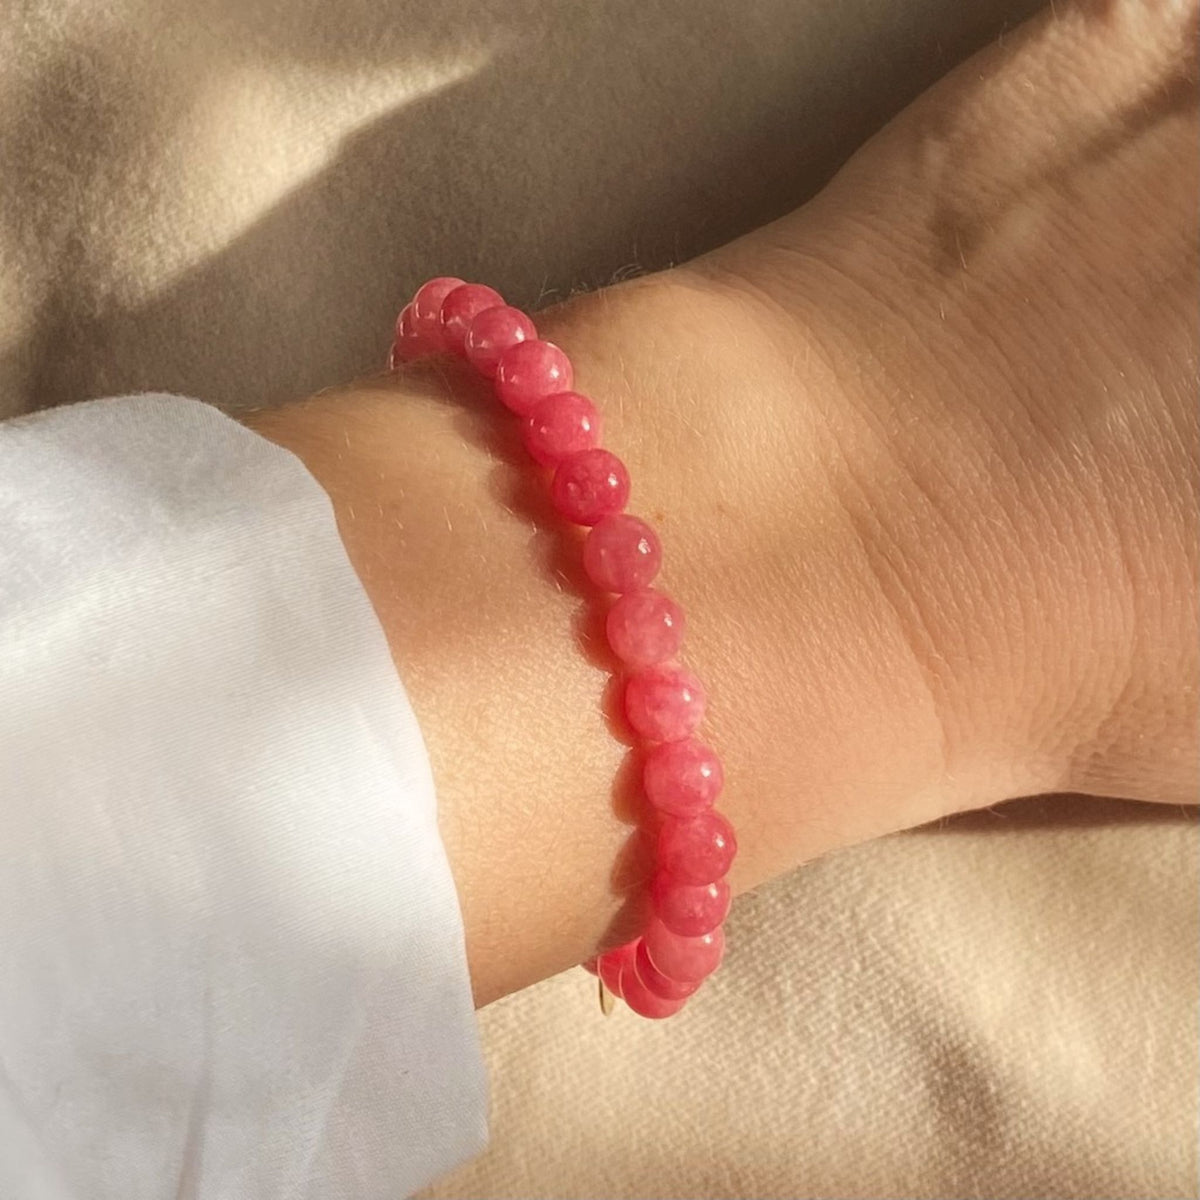 Pink Jade Beaded Bracelet